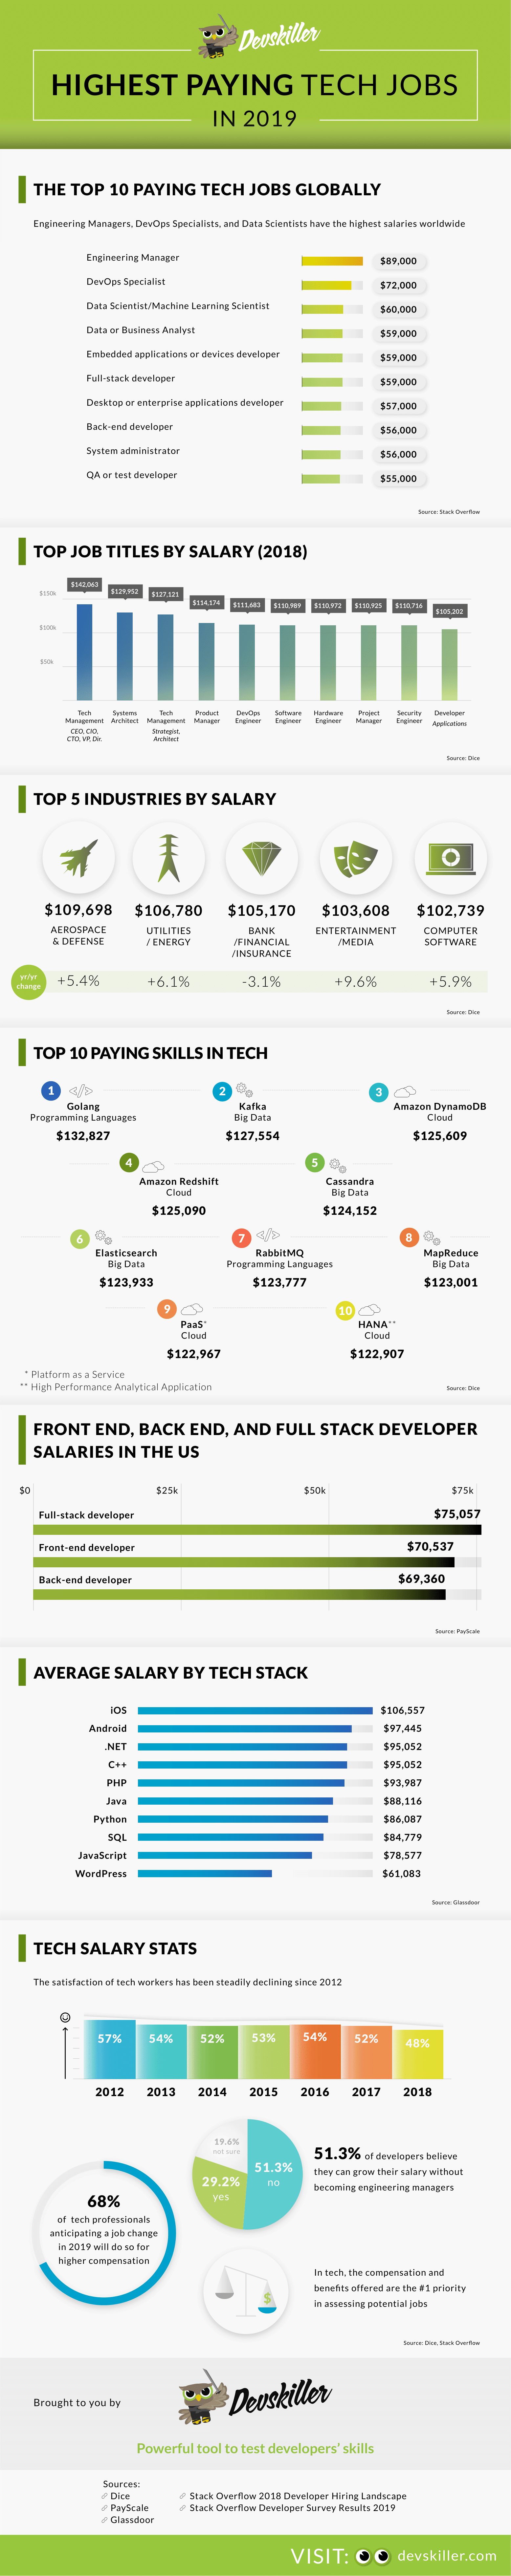 Am besten bezahlte Tech-Jobs